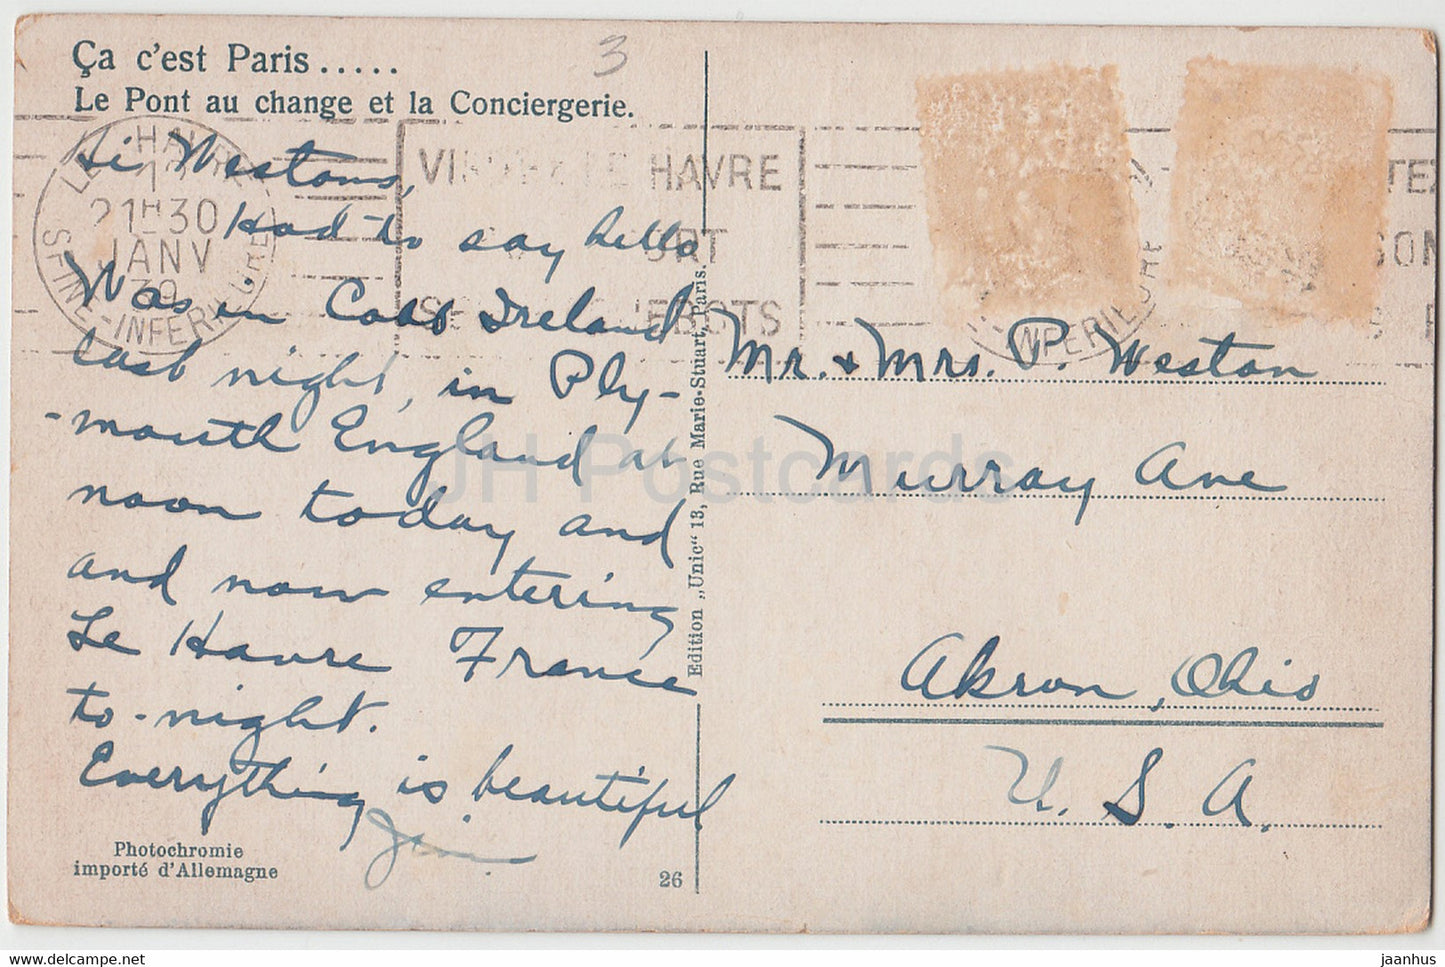 Paris - Le Pont au change et la Conciergerie - tram - pont - 26 - carte postale ancienne - 1939 - France - occasion